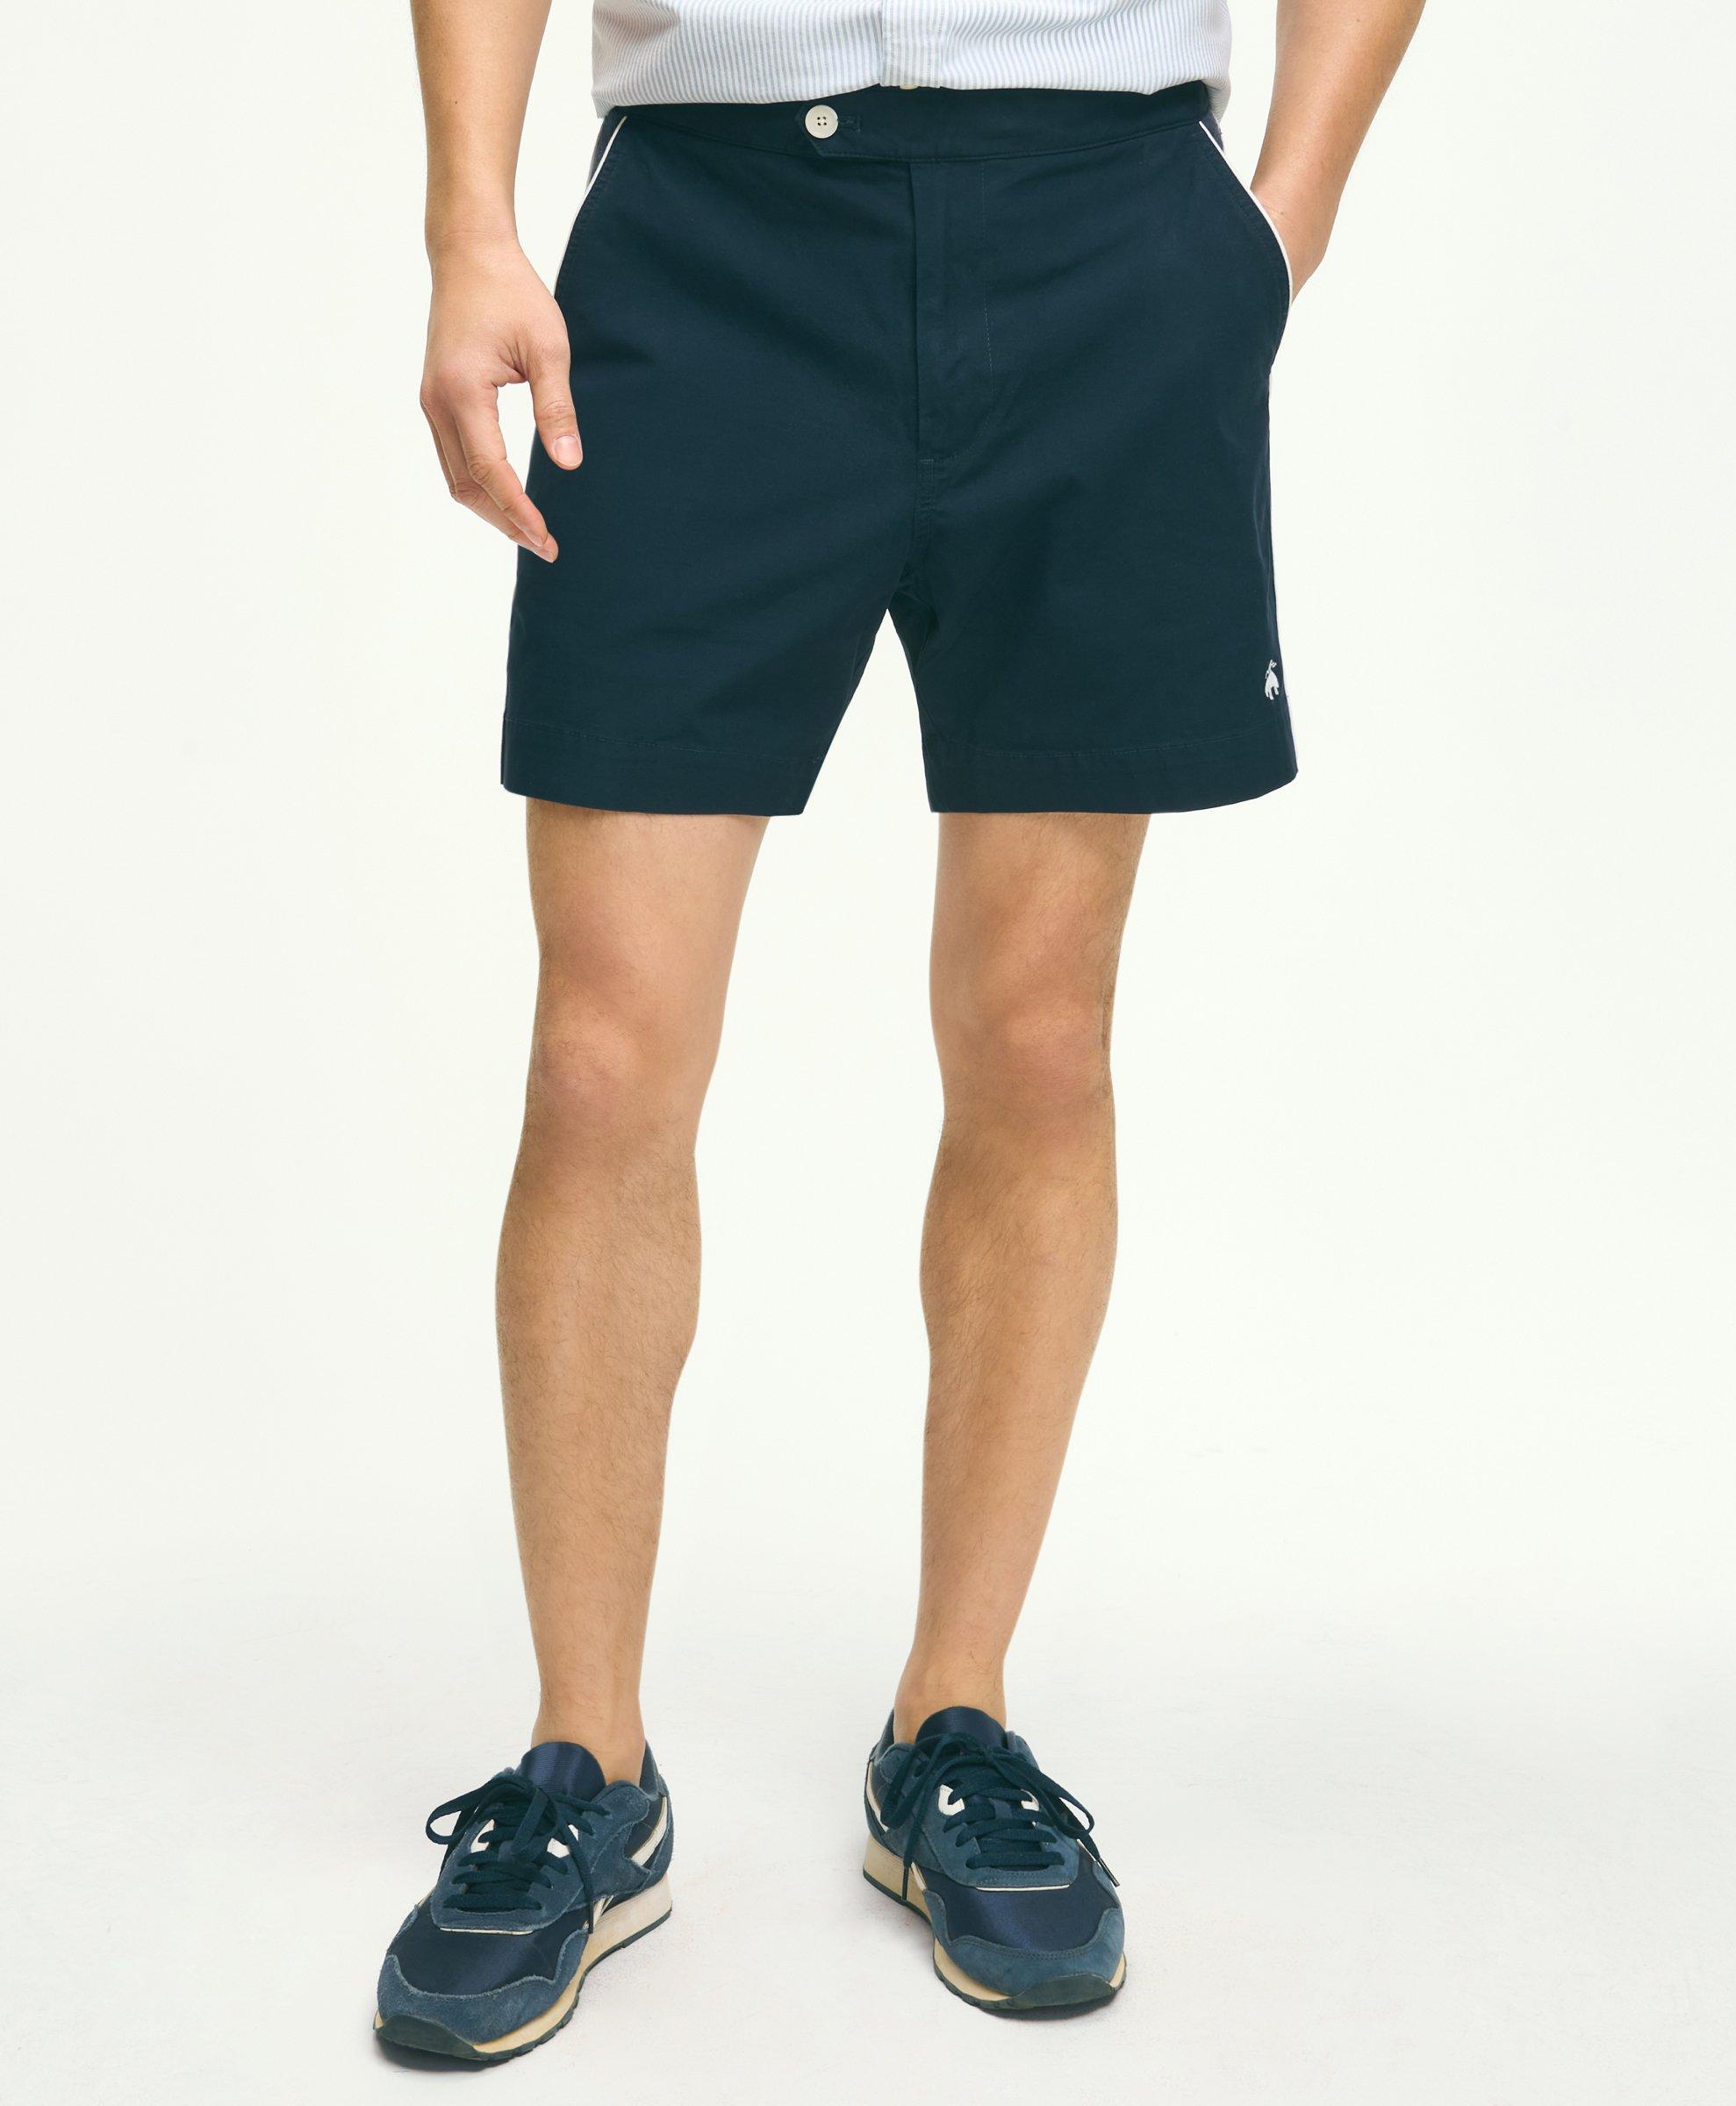 Mens Activewear Shorts